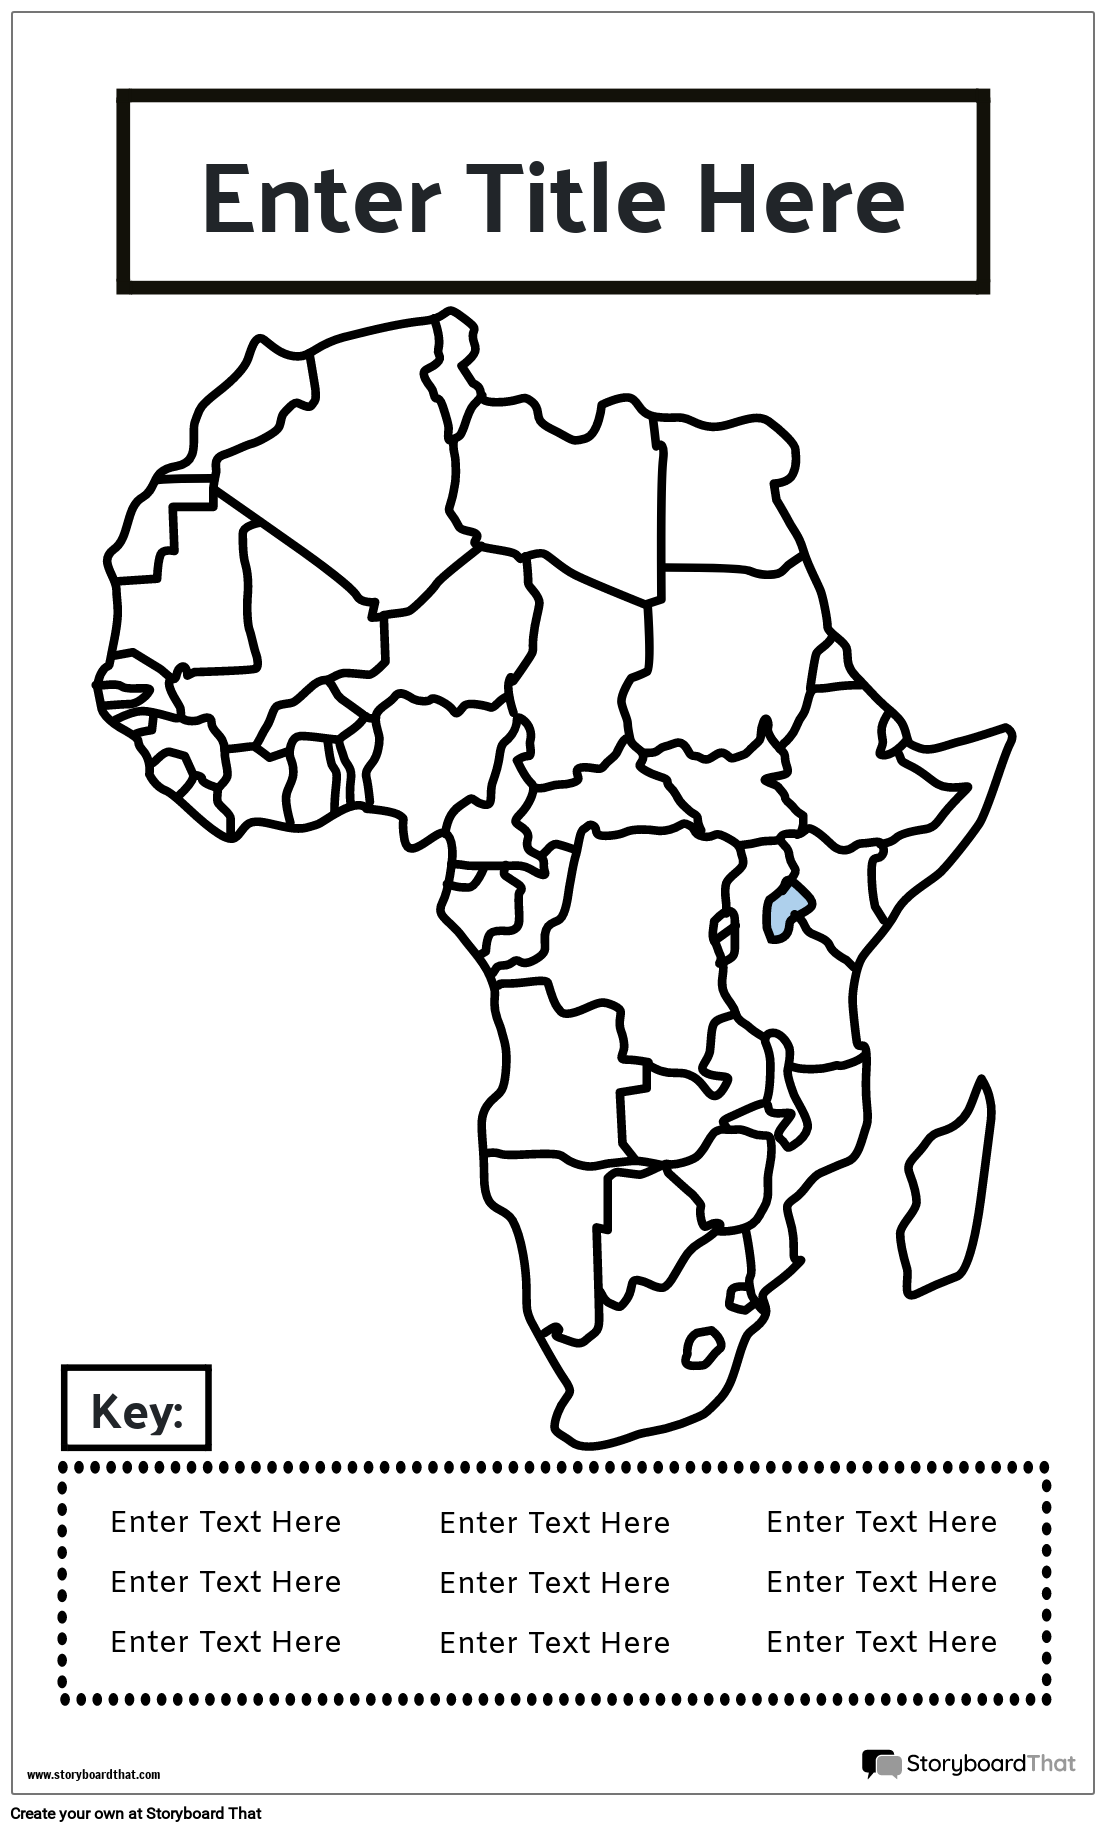 नक्शा पोस्टर 18 बीडब्ल्यू पोर्ट्रेट-अफ्रीका